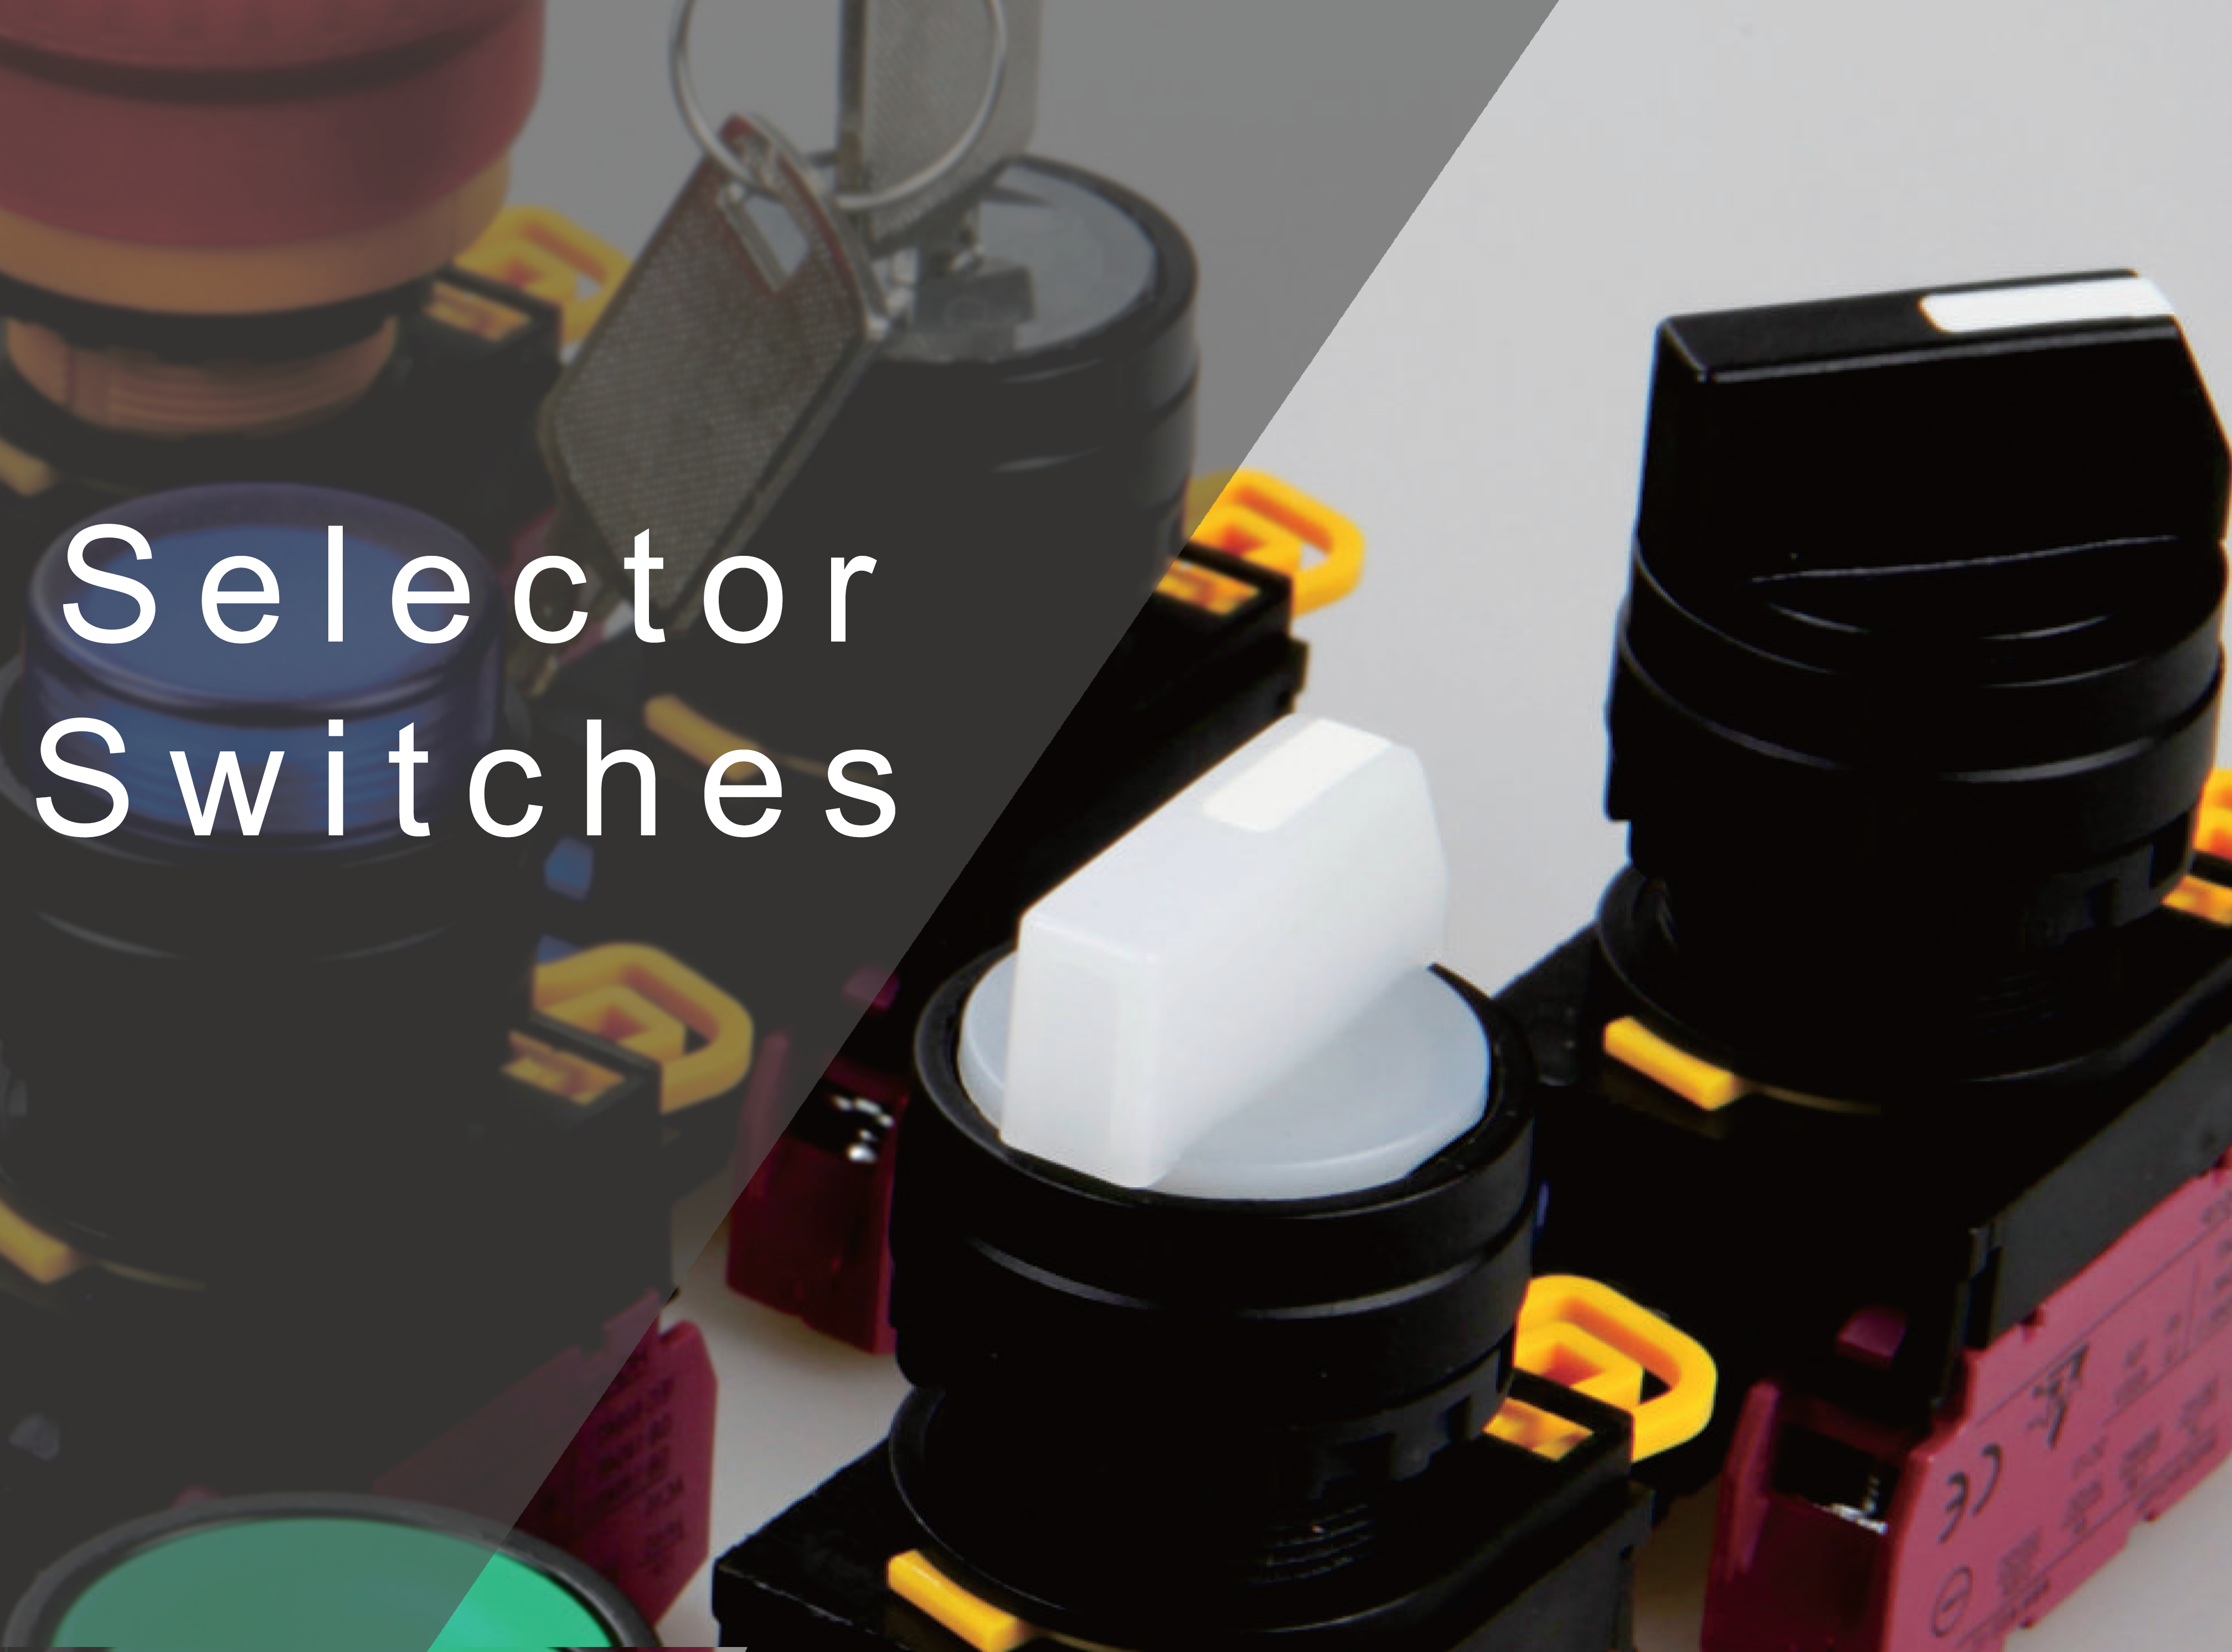 Selector Switches with LED illumination, ring LED illumination IP rating, round, sqaure or rectangular, RJS Electronics Ltd.